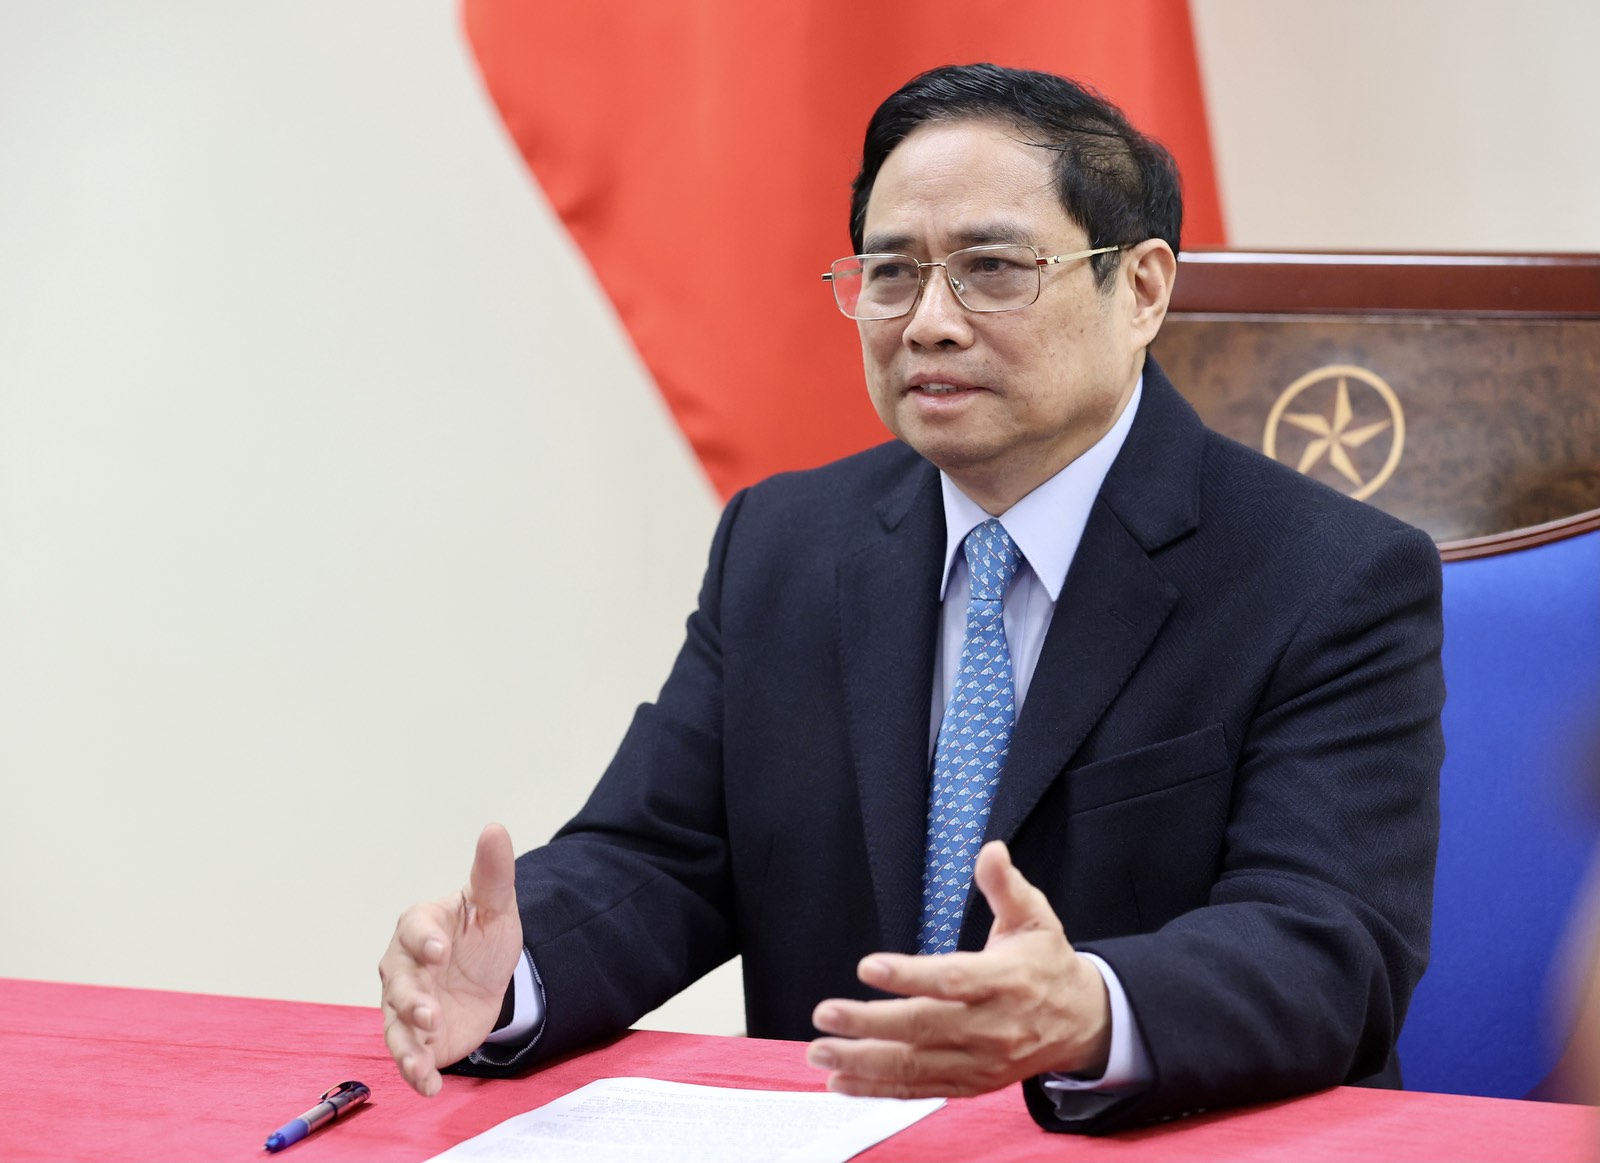 Thủ tướng Phạm Minh Chính điện đàm với Thủ tướng Trung Quốc, thúc đẩy quan hệ toàn diện, giải quyết vấn đề ách tắc hàng hóa tại cửa khẩu - Ảnh 1.